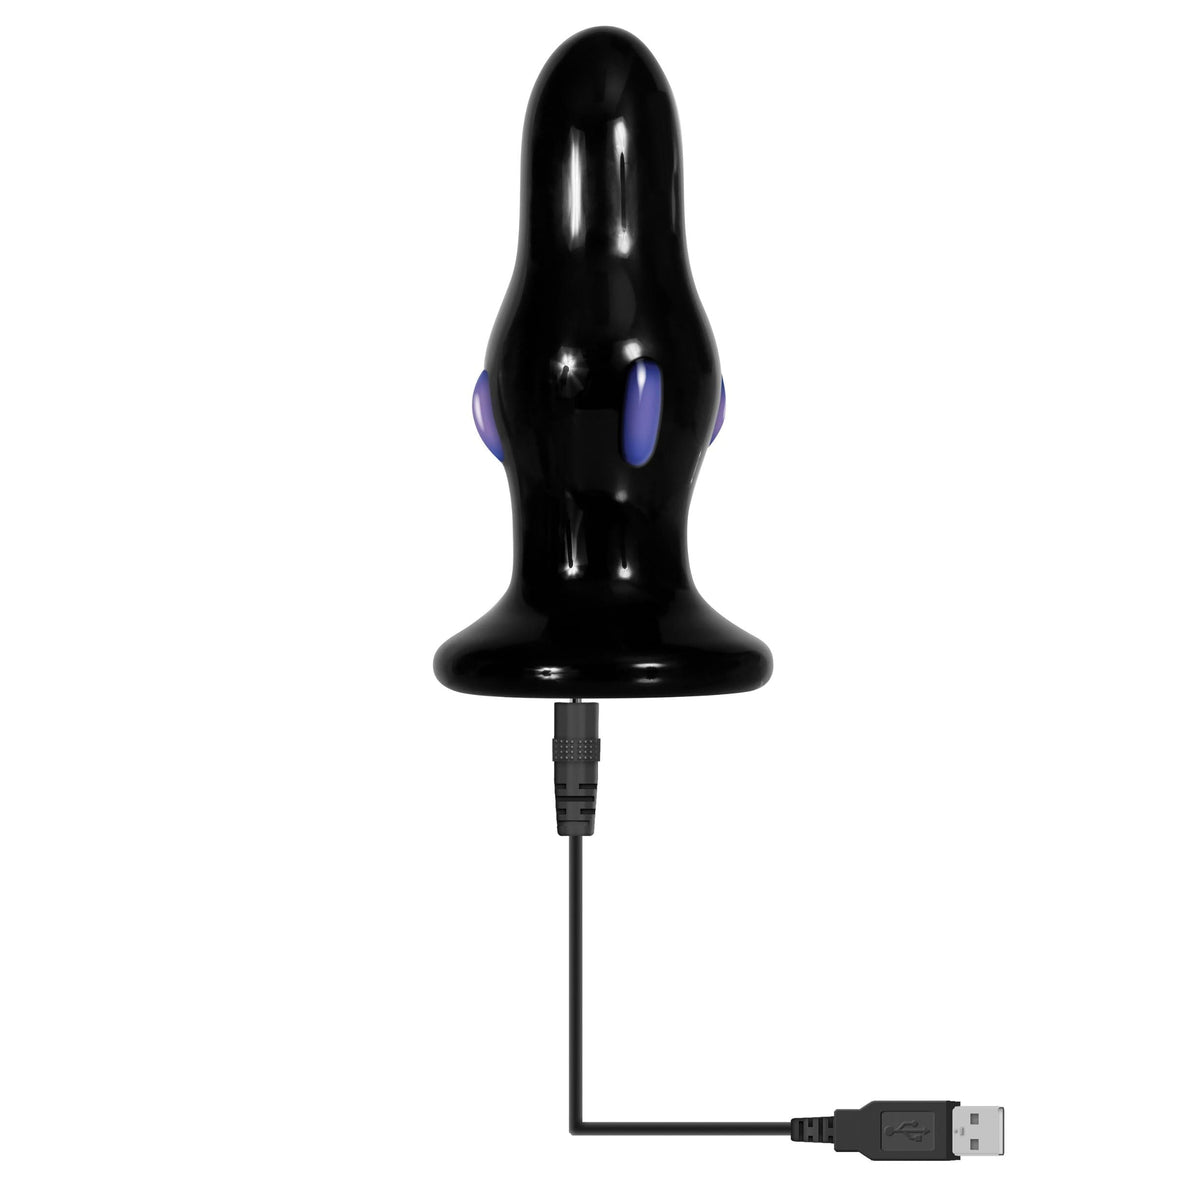 anal plugs, anal butt plugs